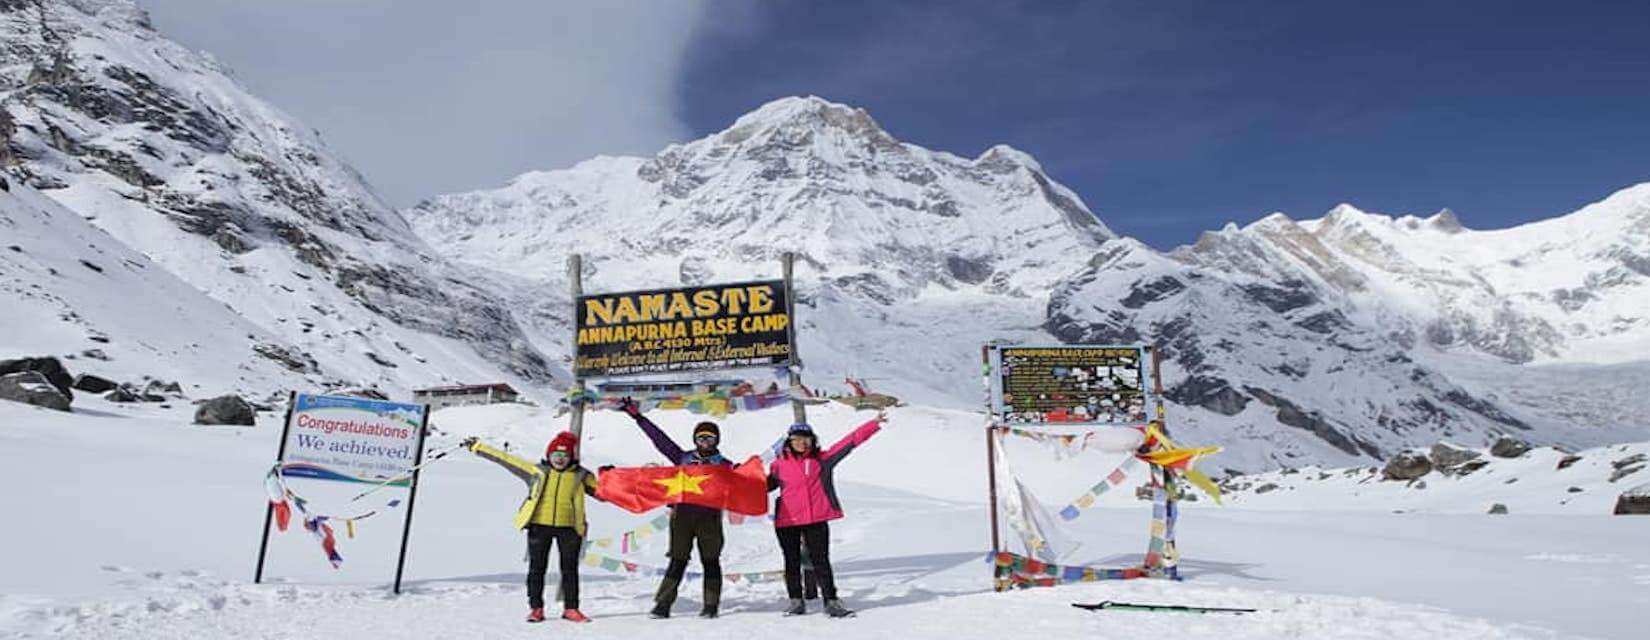 Rapid Annapurna Base Camp Trek